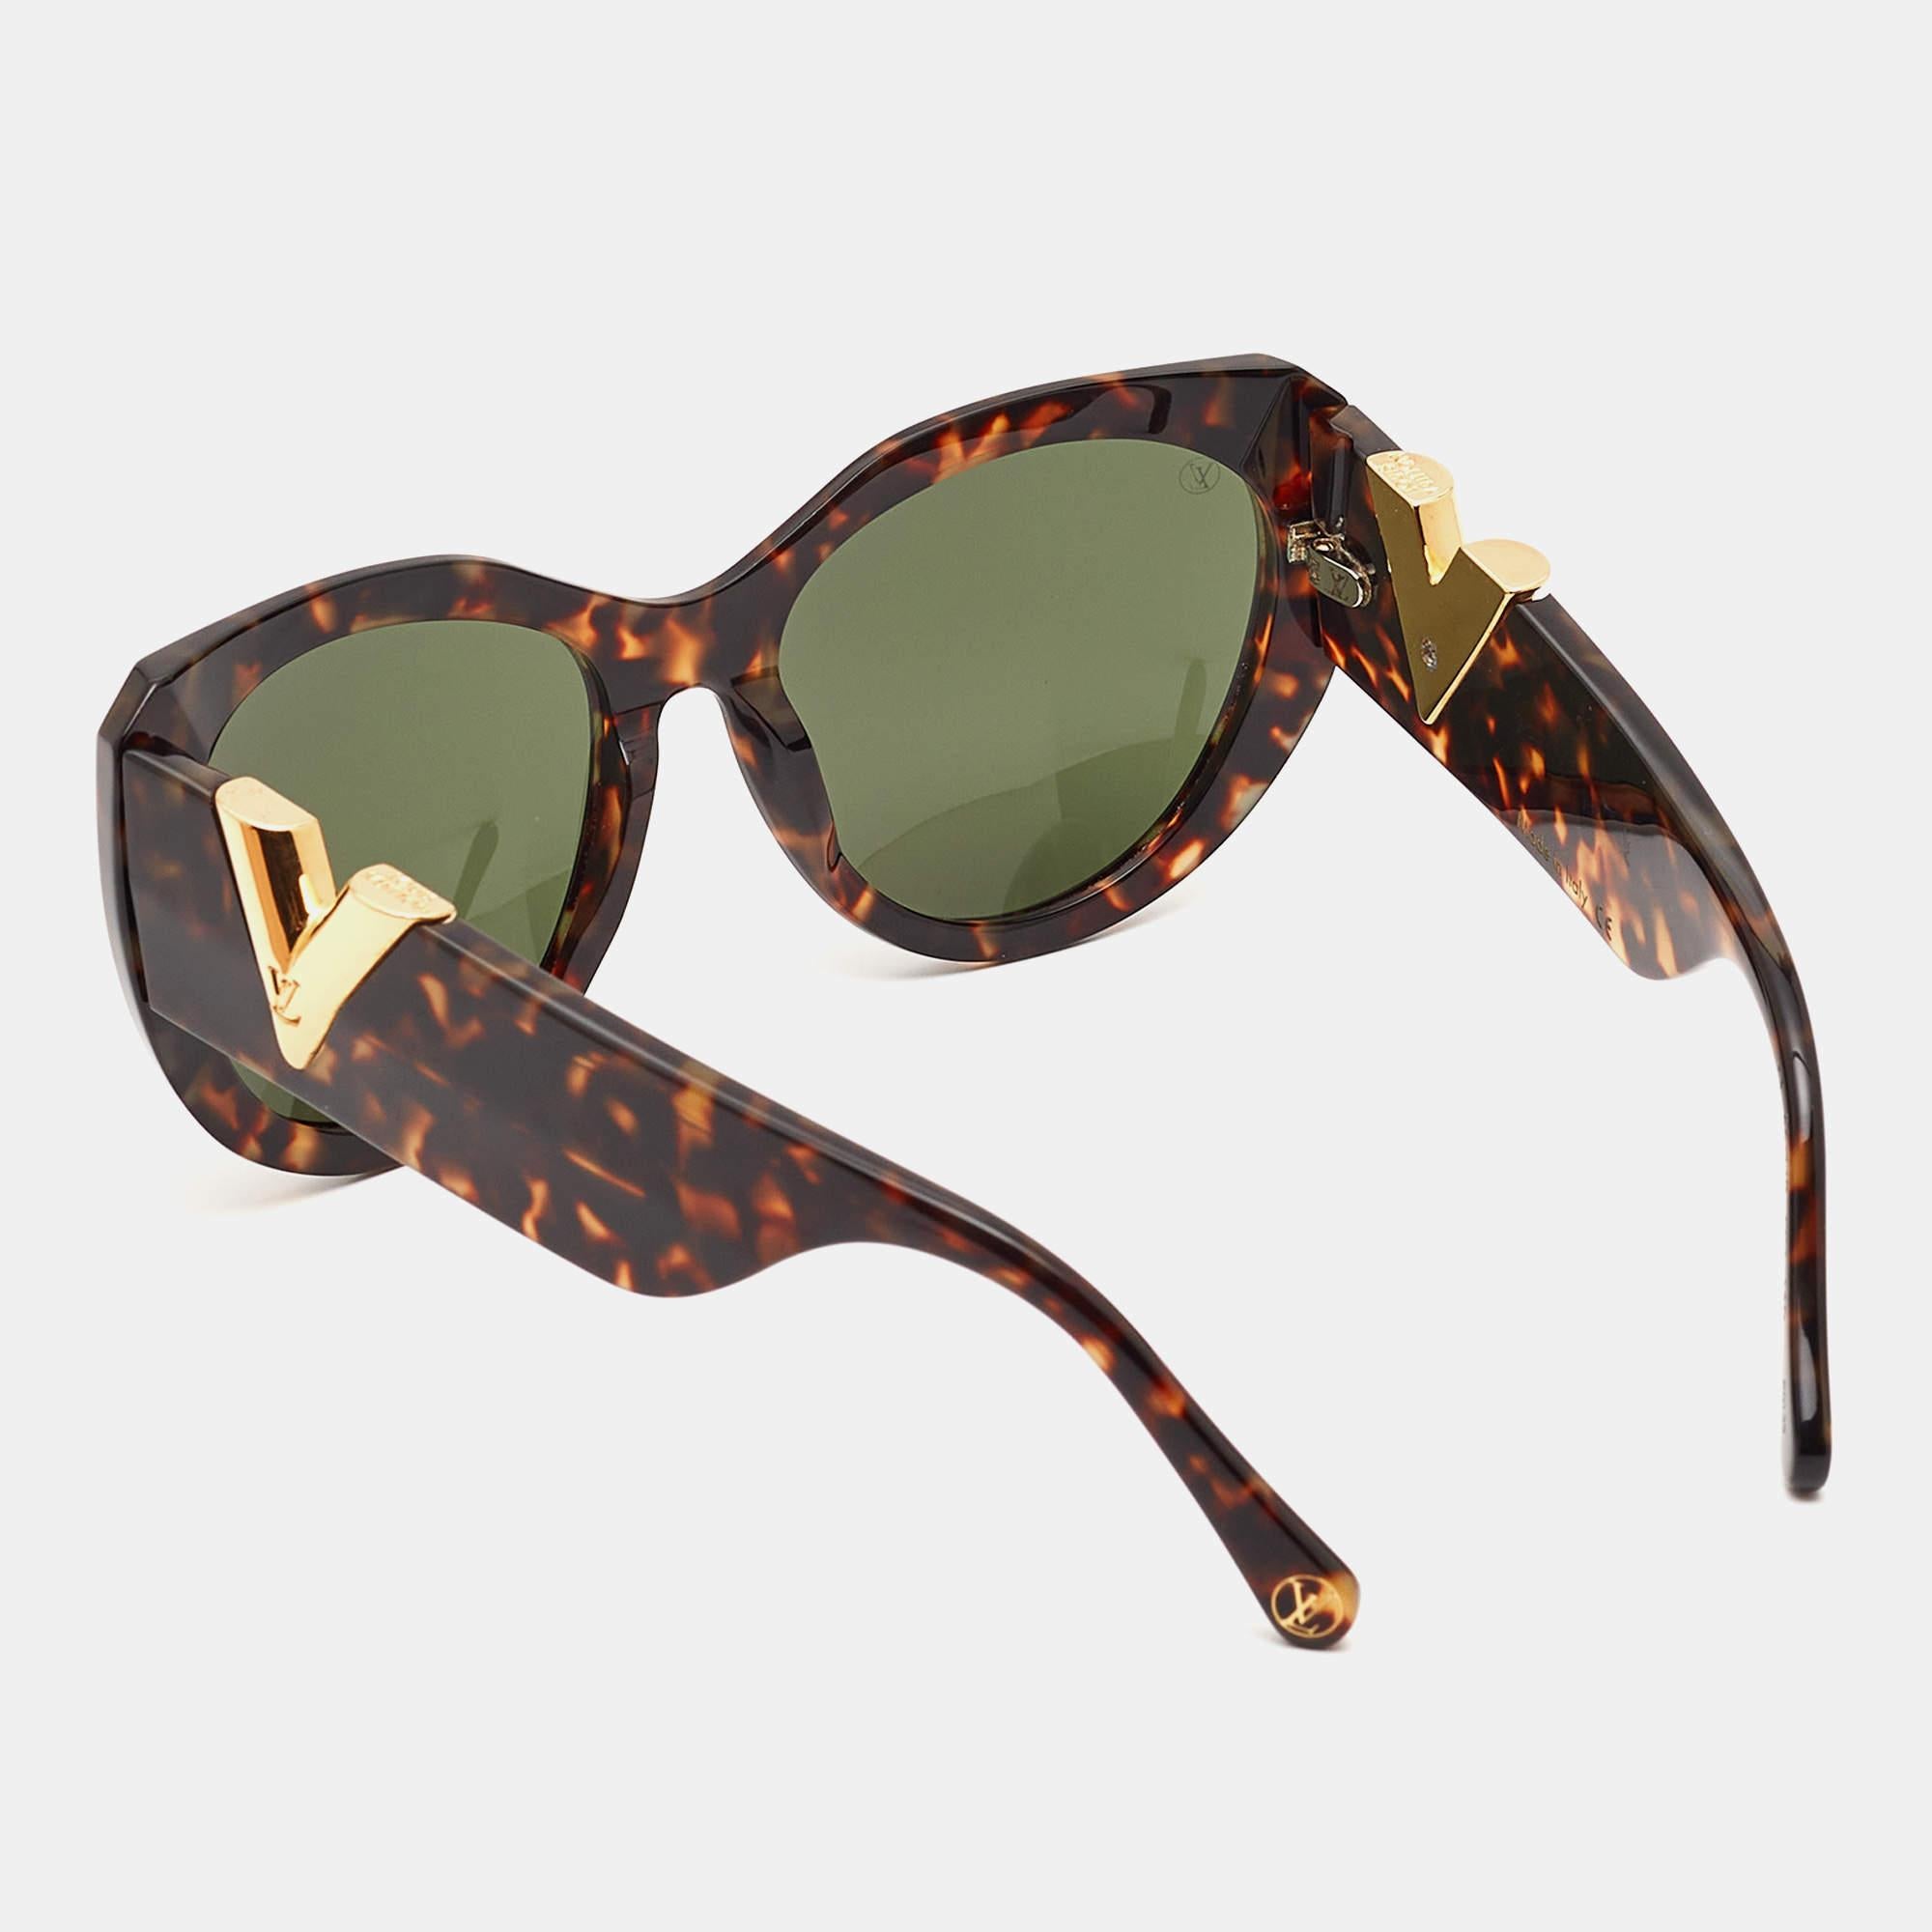 Ces lunettes de soleil marron Louis Vuitton vous permettent d'élever votre jeu de lunettes. Méticuleusement fabriquées à partir de matériaux de première qualité, elles offrent une protection UV inégalée et un design intemporel, ce qui en fait un